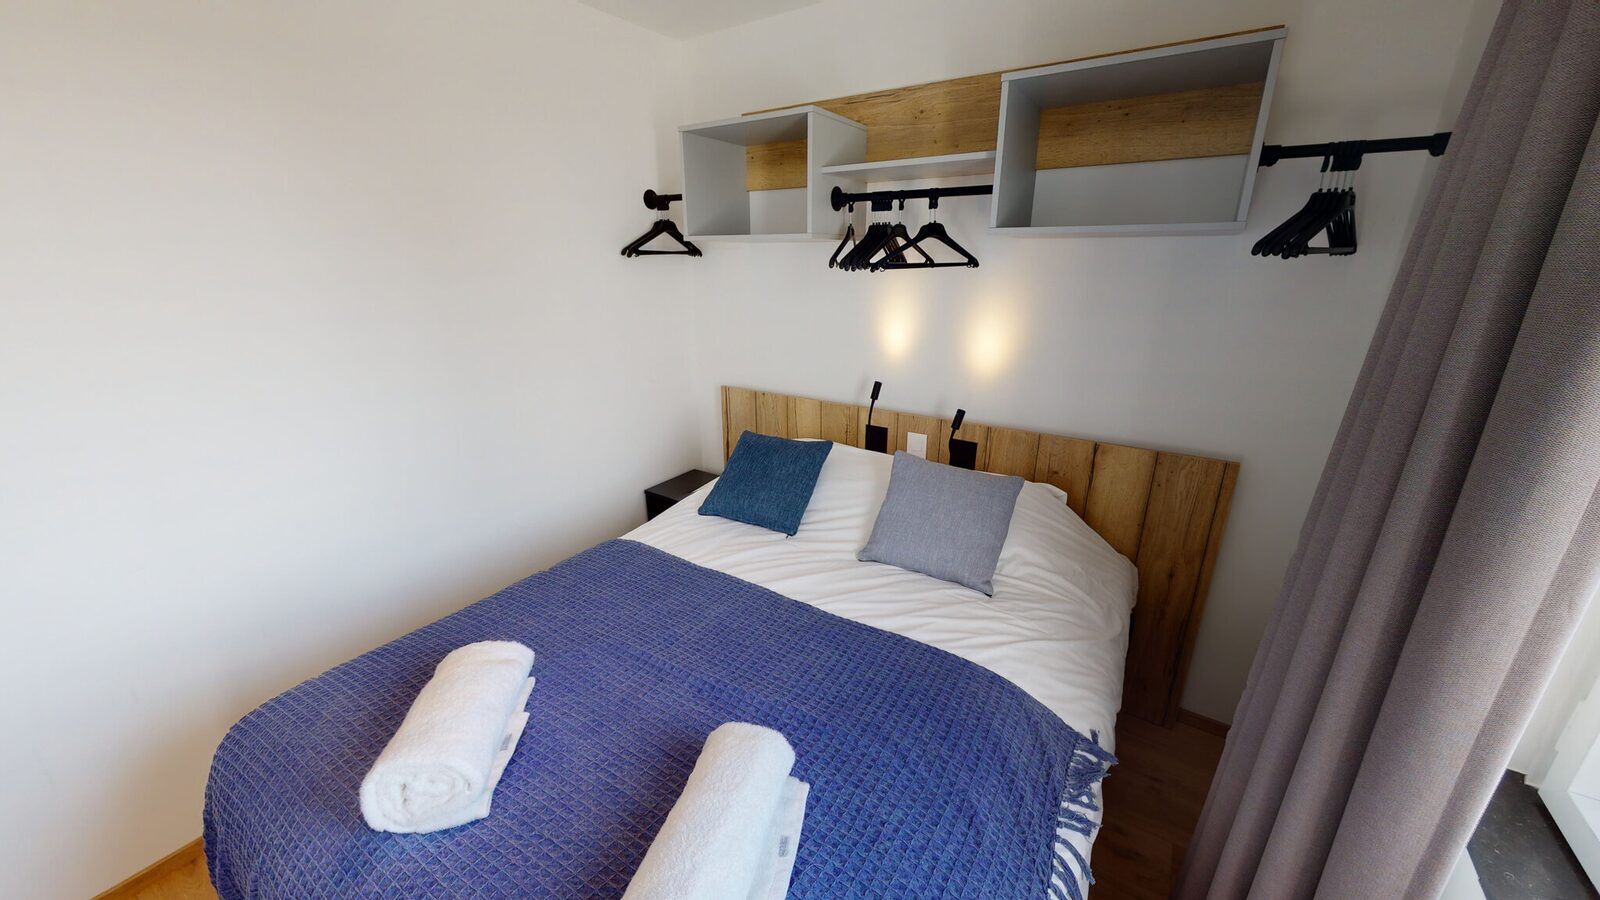 Appartement pour 4 personnes avec lit double + 2 lits simples et balcon